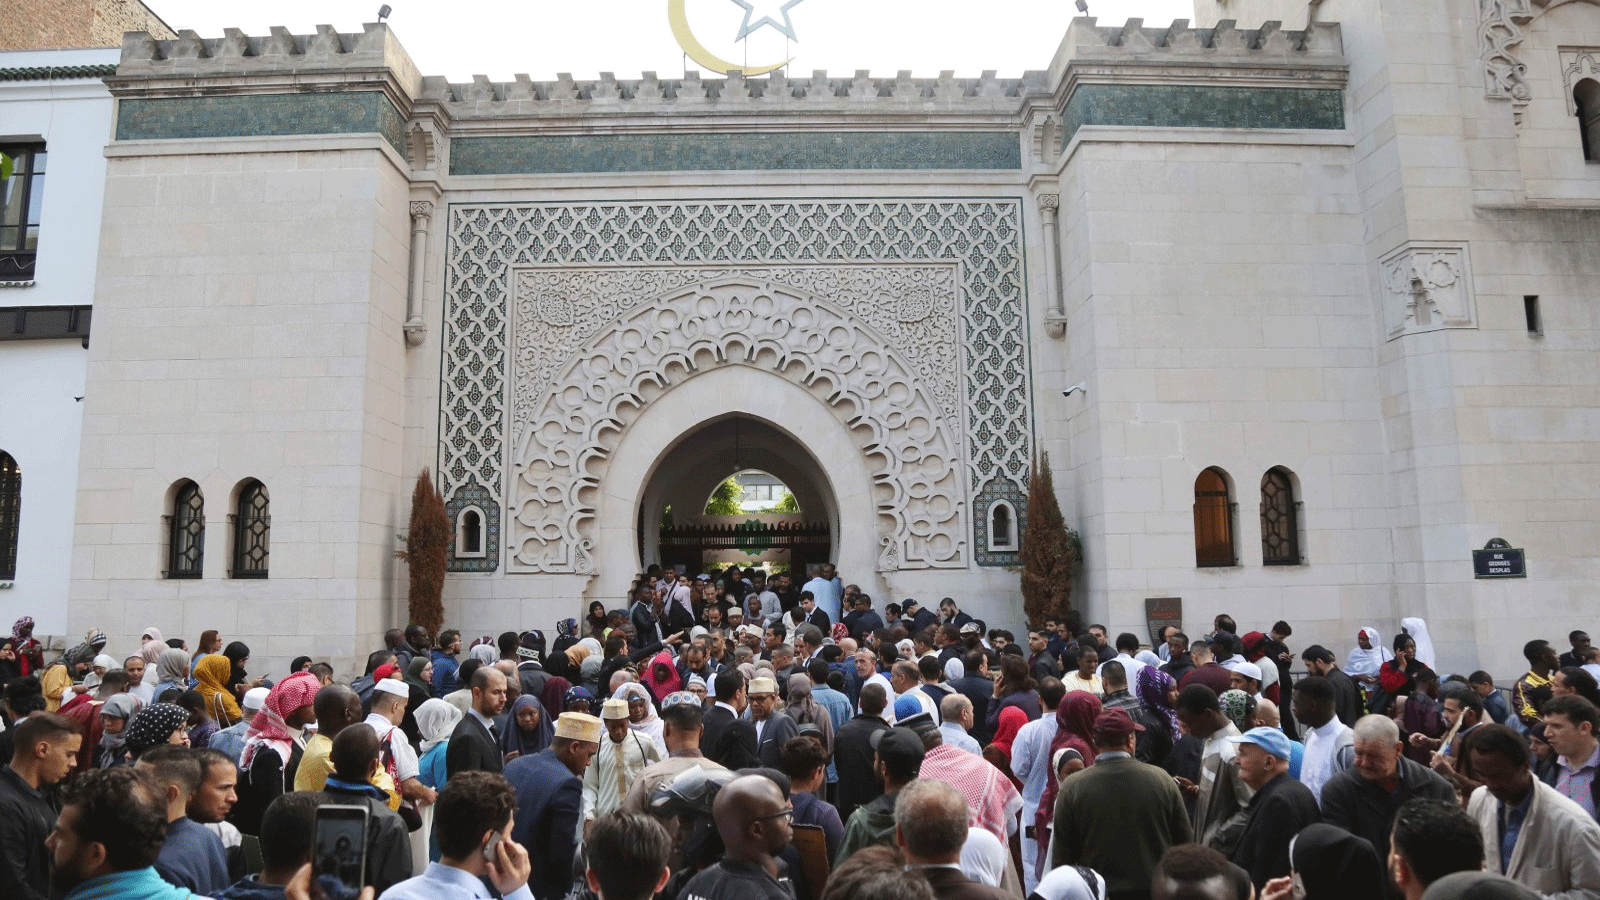 المسلمون يتجمعون في المسجد الكبير في باريس (المسجد الكبير في باريس) في بداية إجازة عيد الفطر الذي يصادف نهاية شهر رمضان 2018